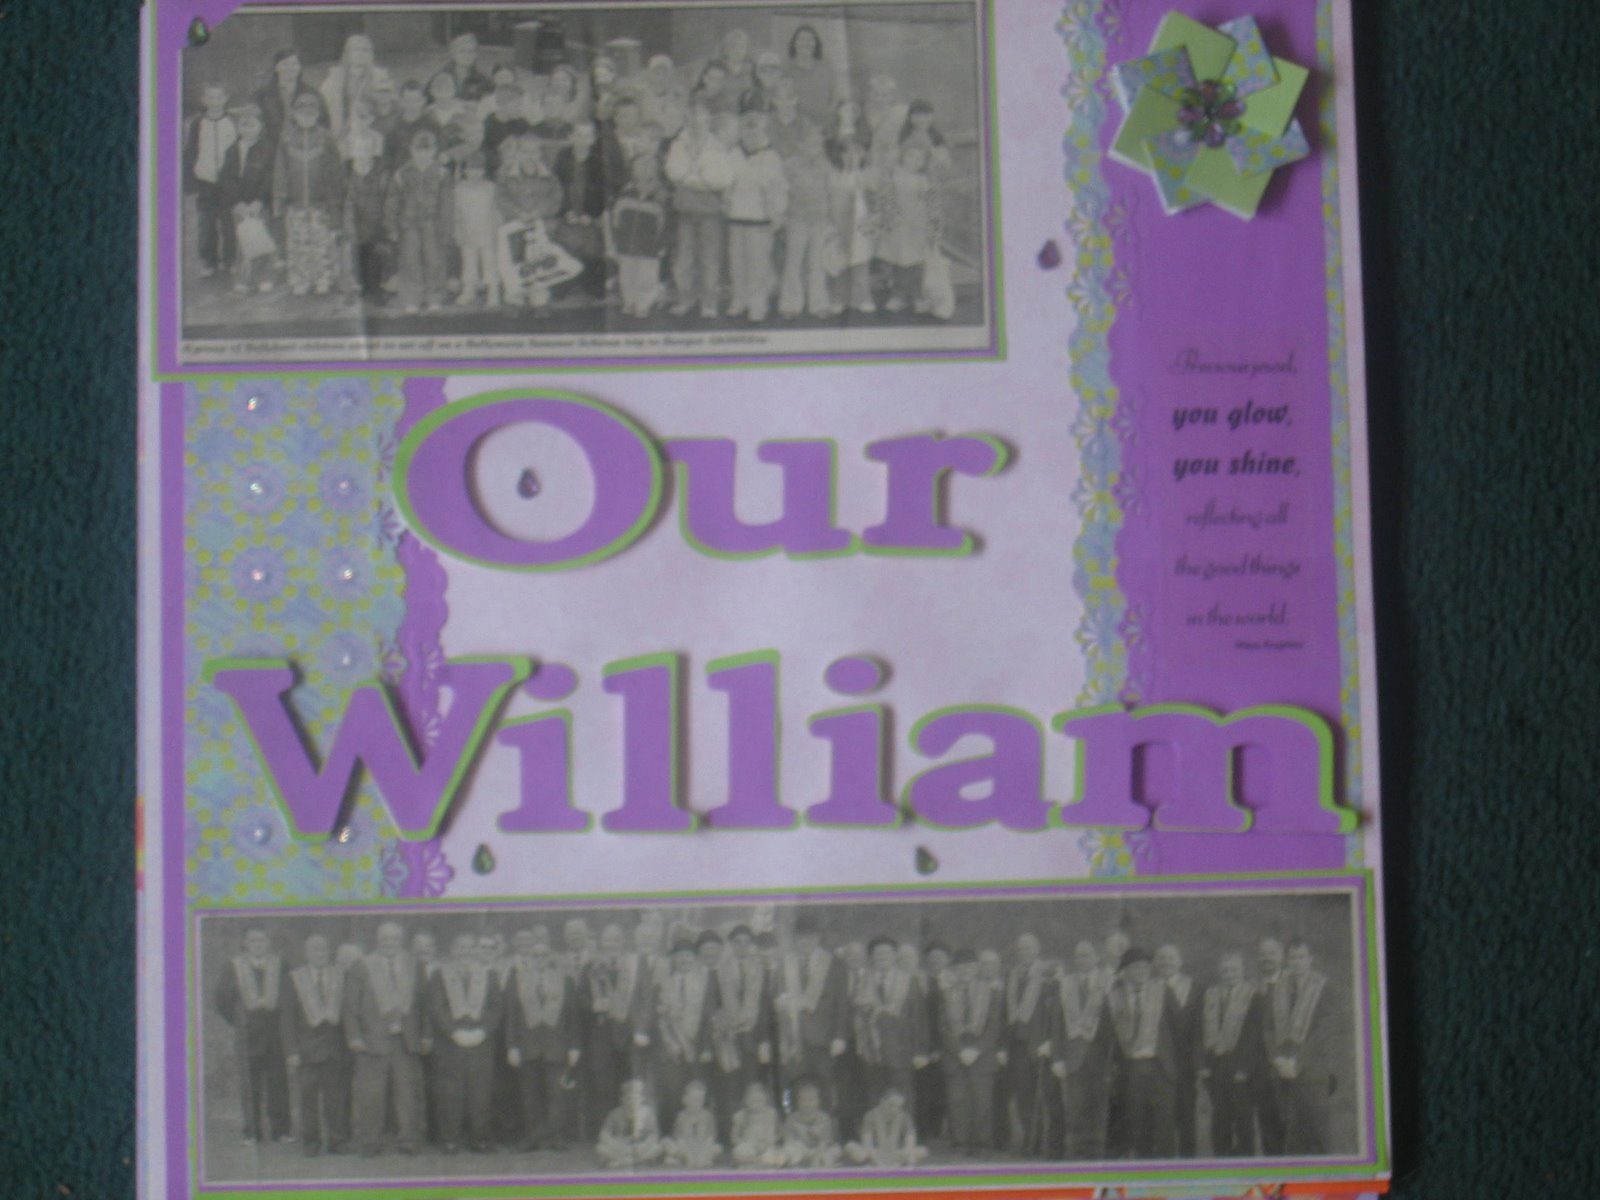 [Our+William.jpg]